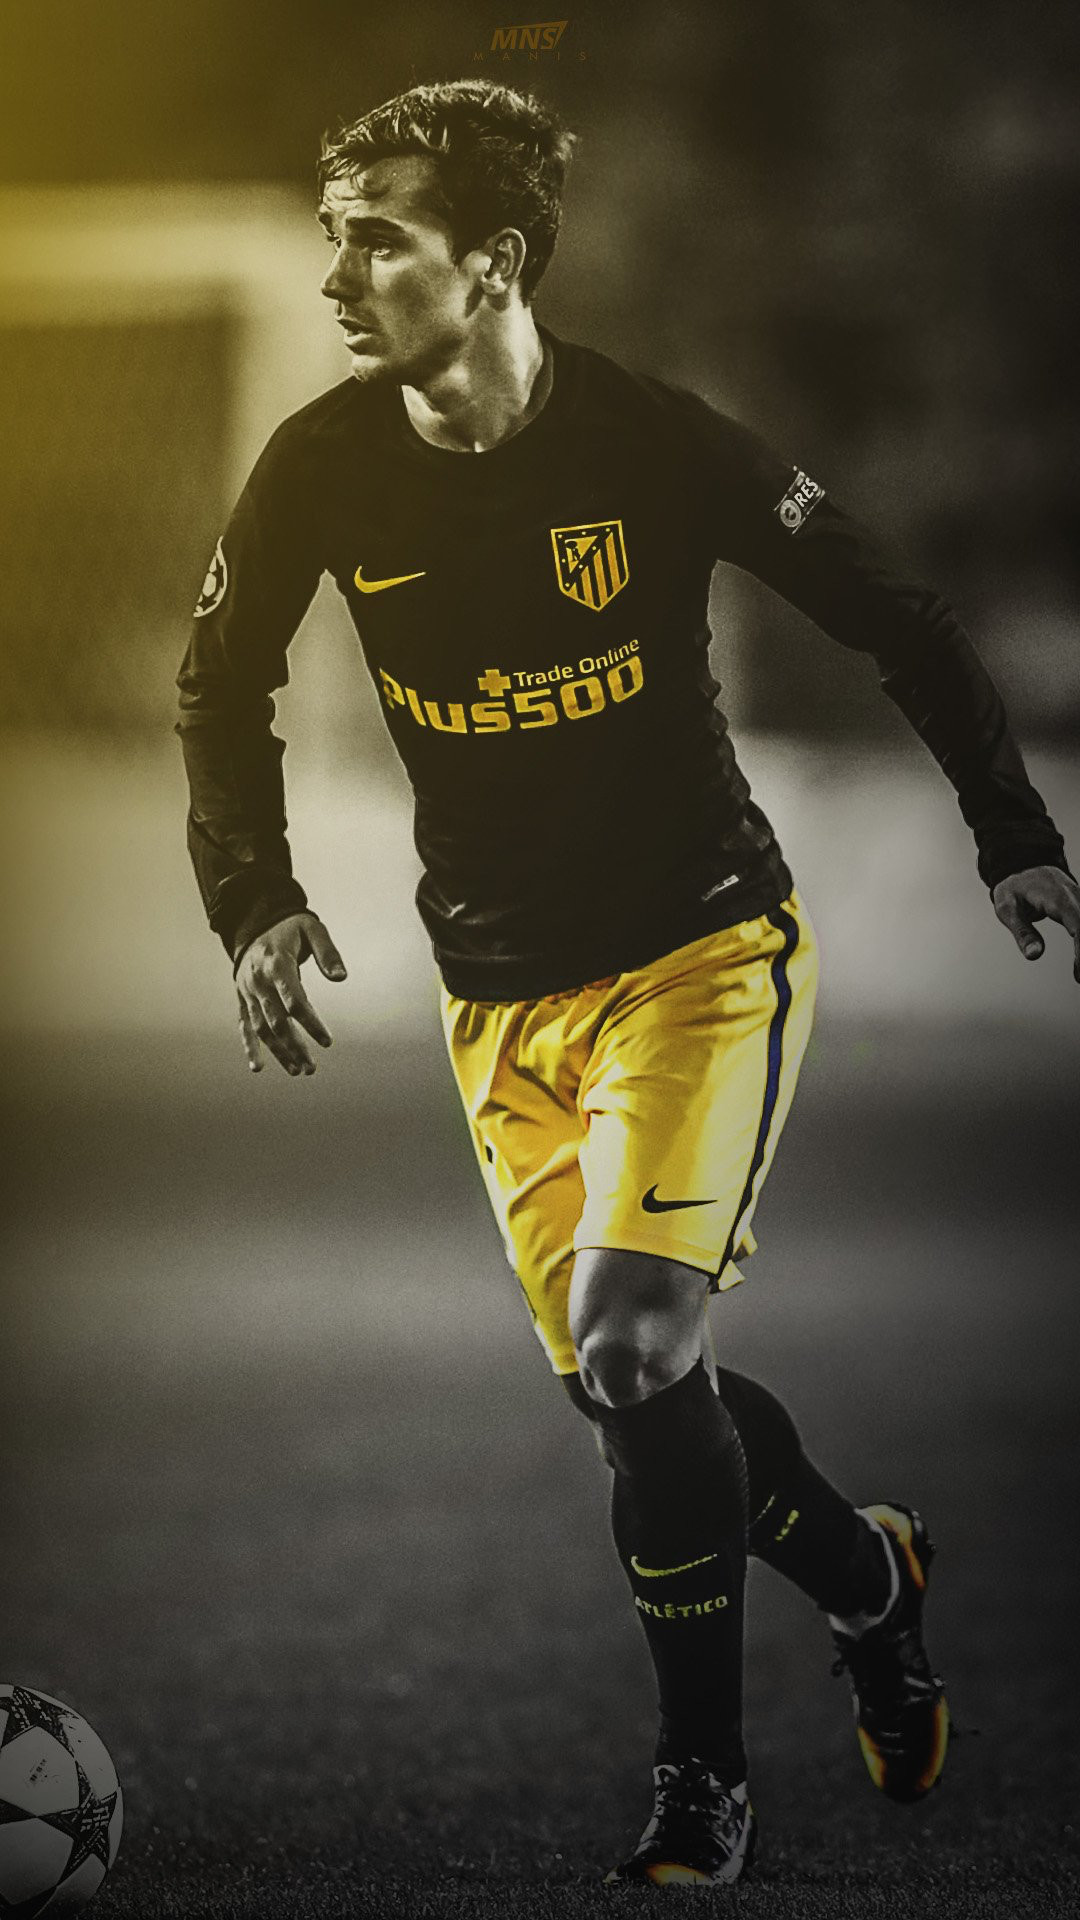 griezmann wallpaper,football player,player,yellow,football,soccer player